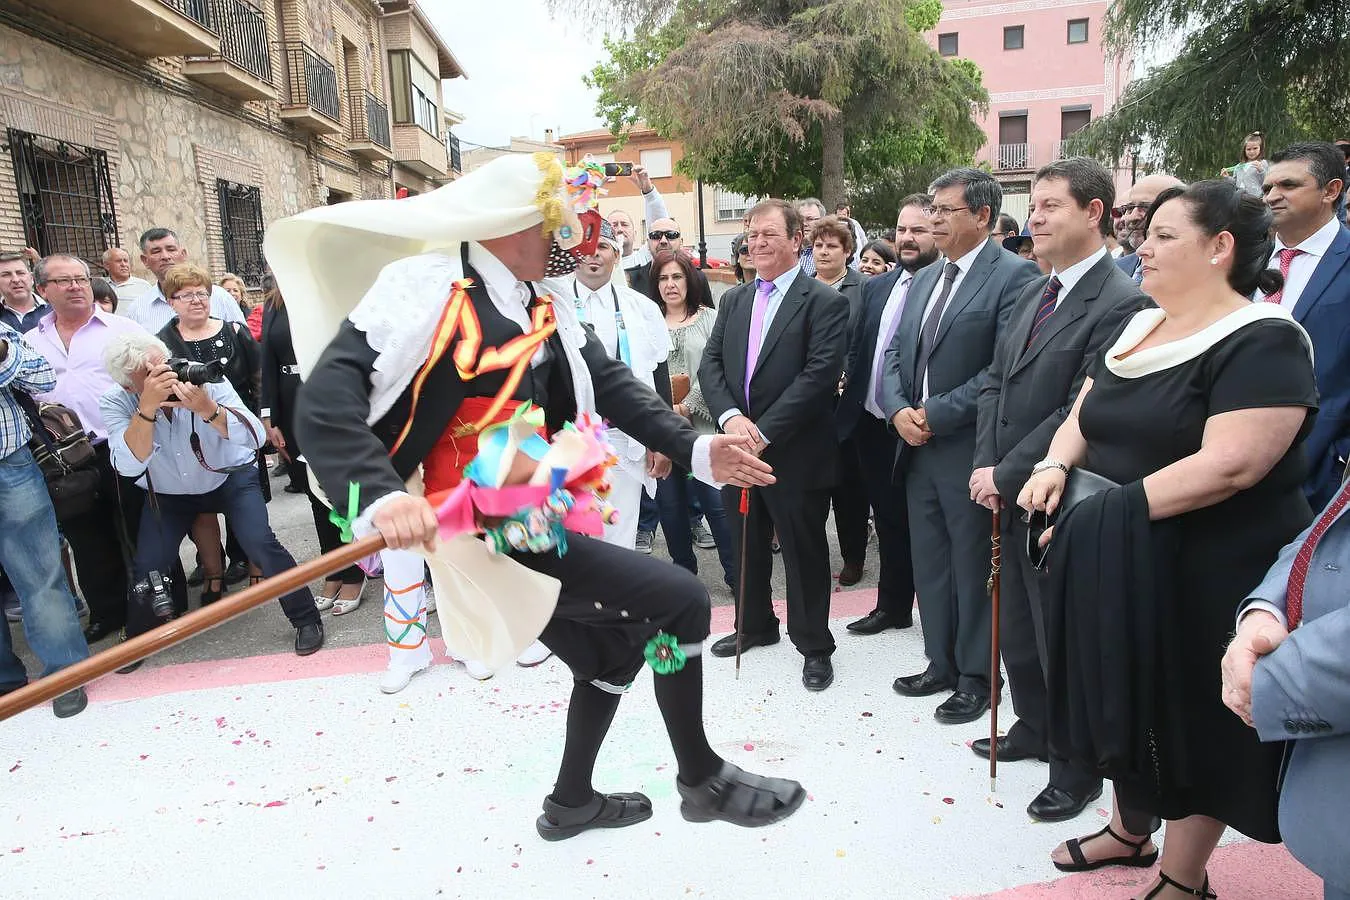 El presidente de Castilla-La Mancha observa una de las danzas en Camuñas